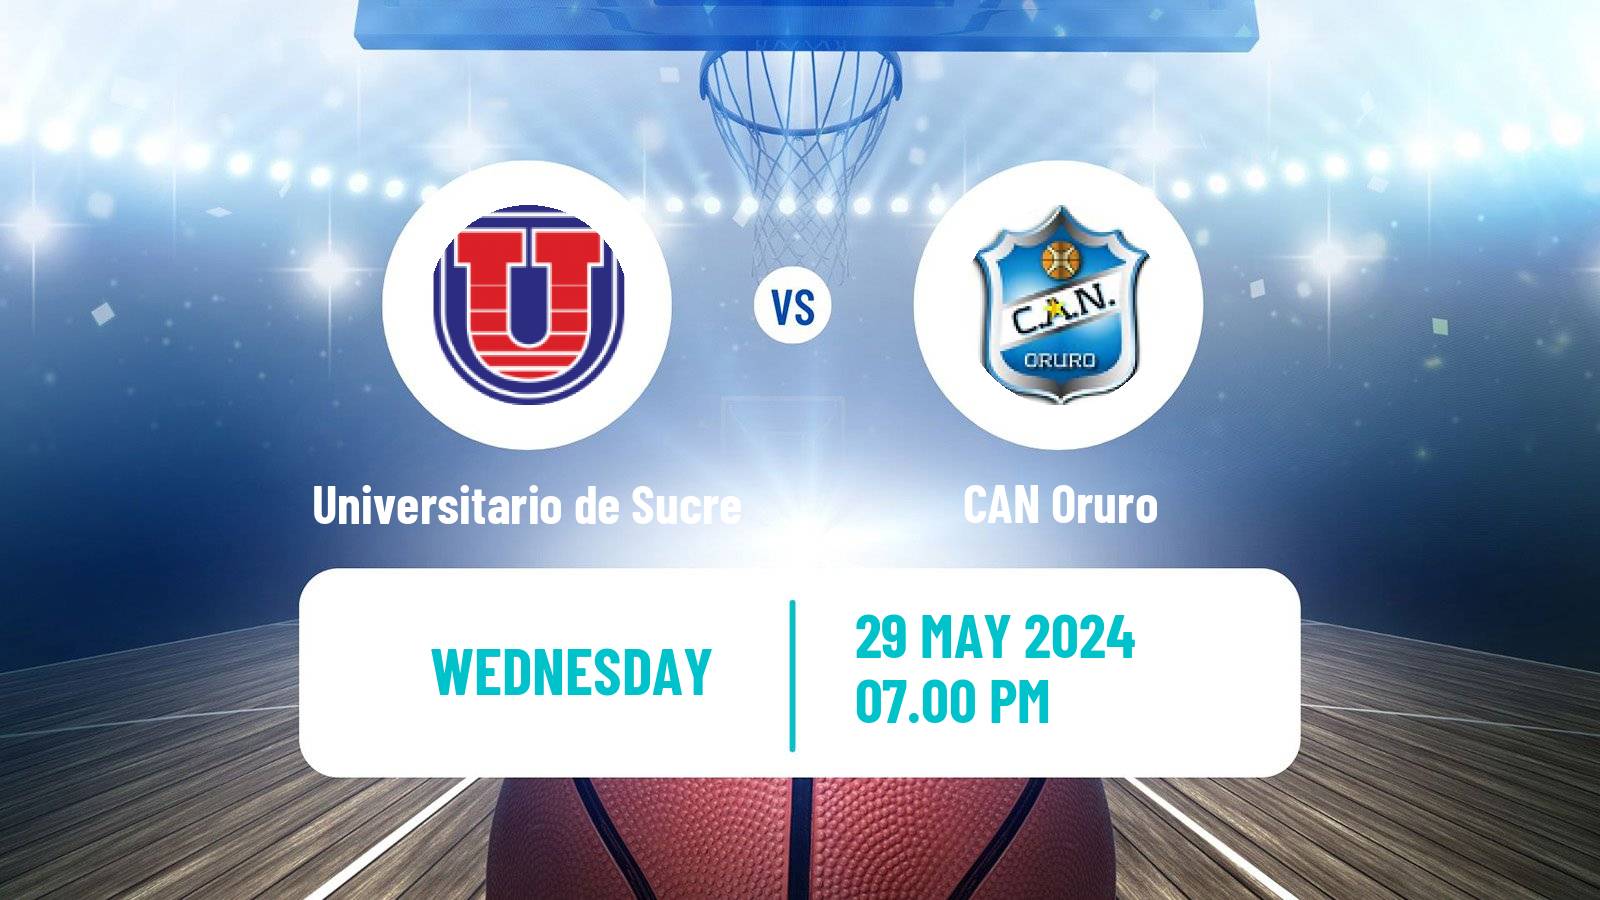 Basketball Bolivian Libobasquet Universitario de Sucre - CAN Oruro